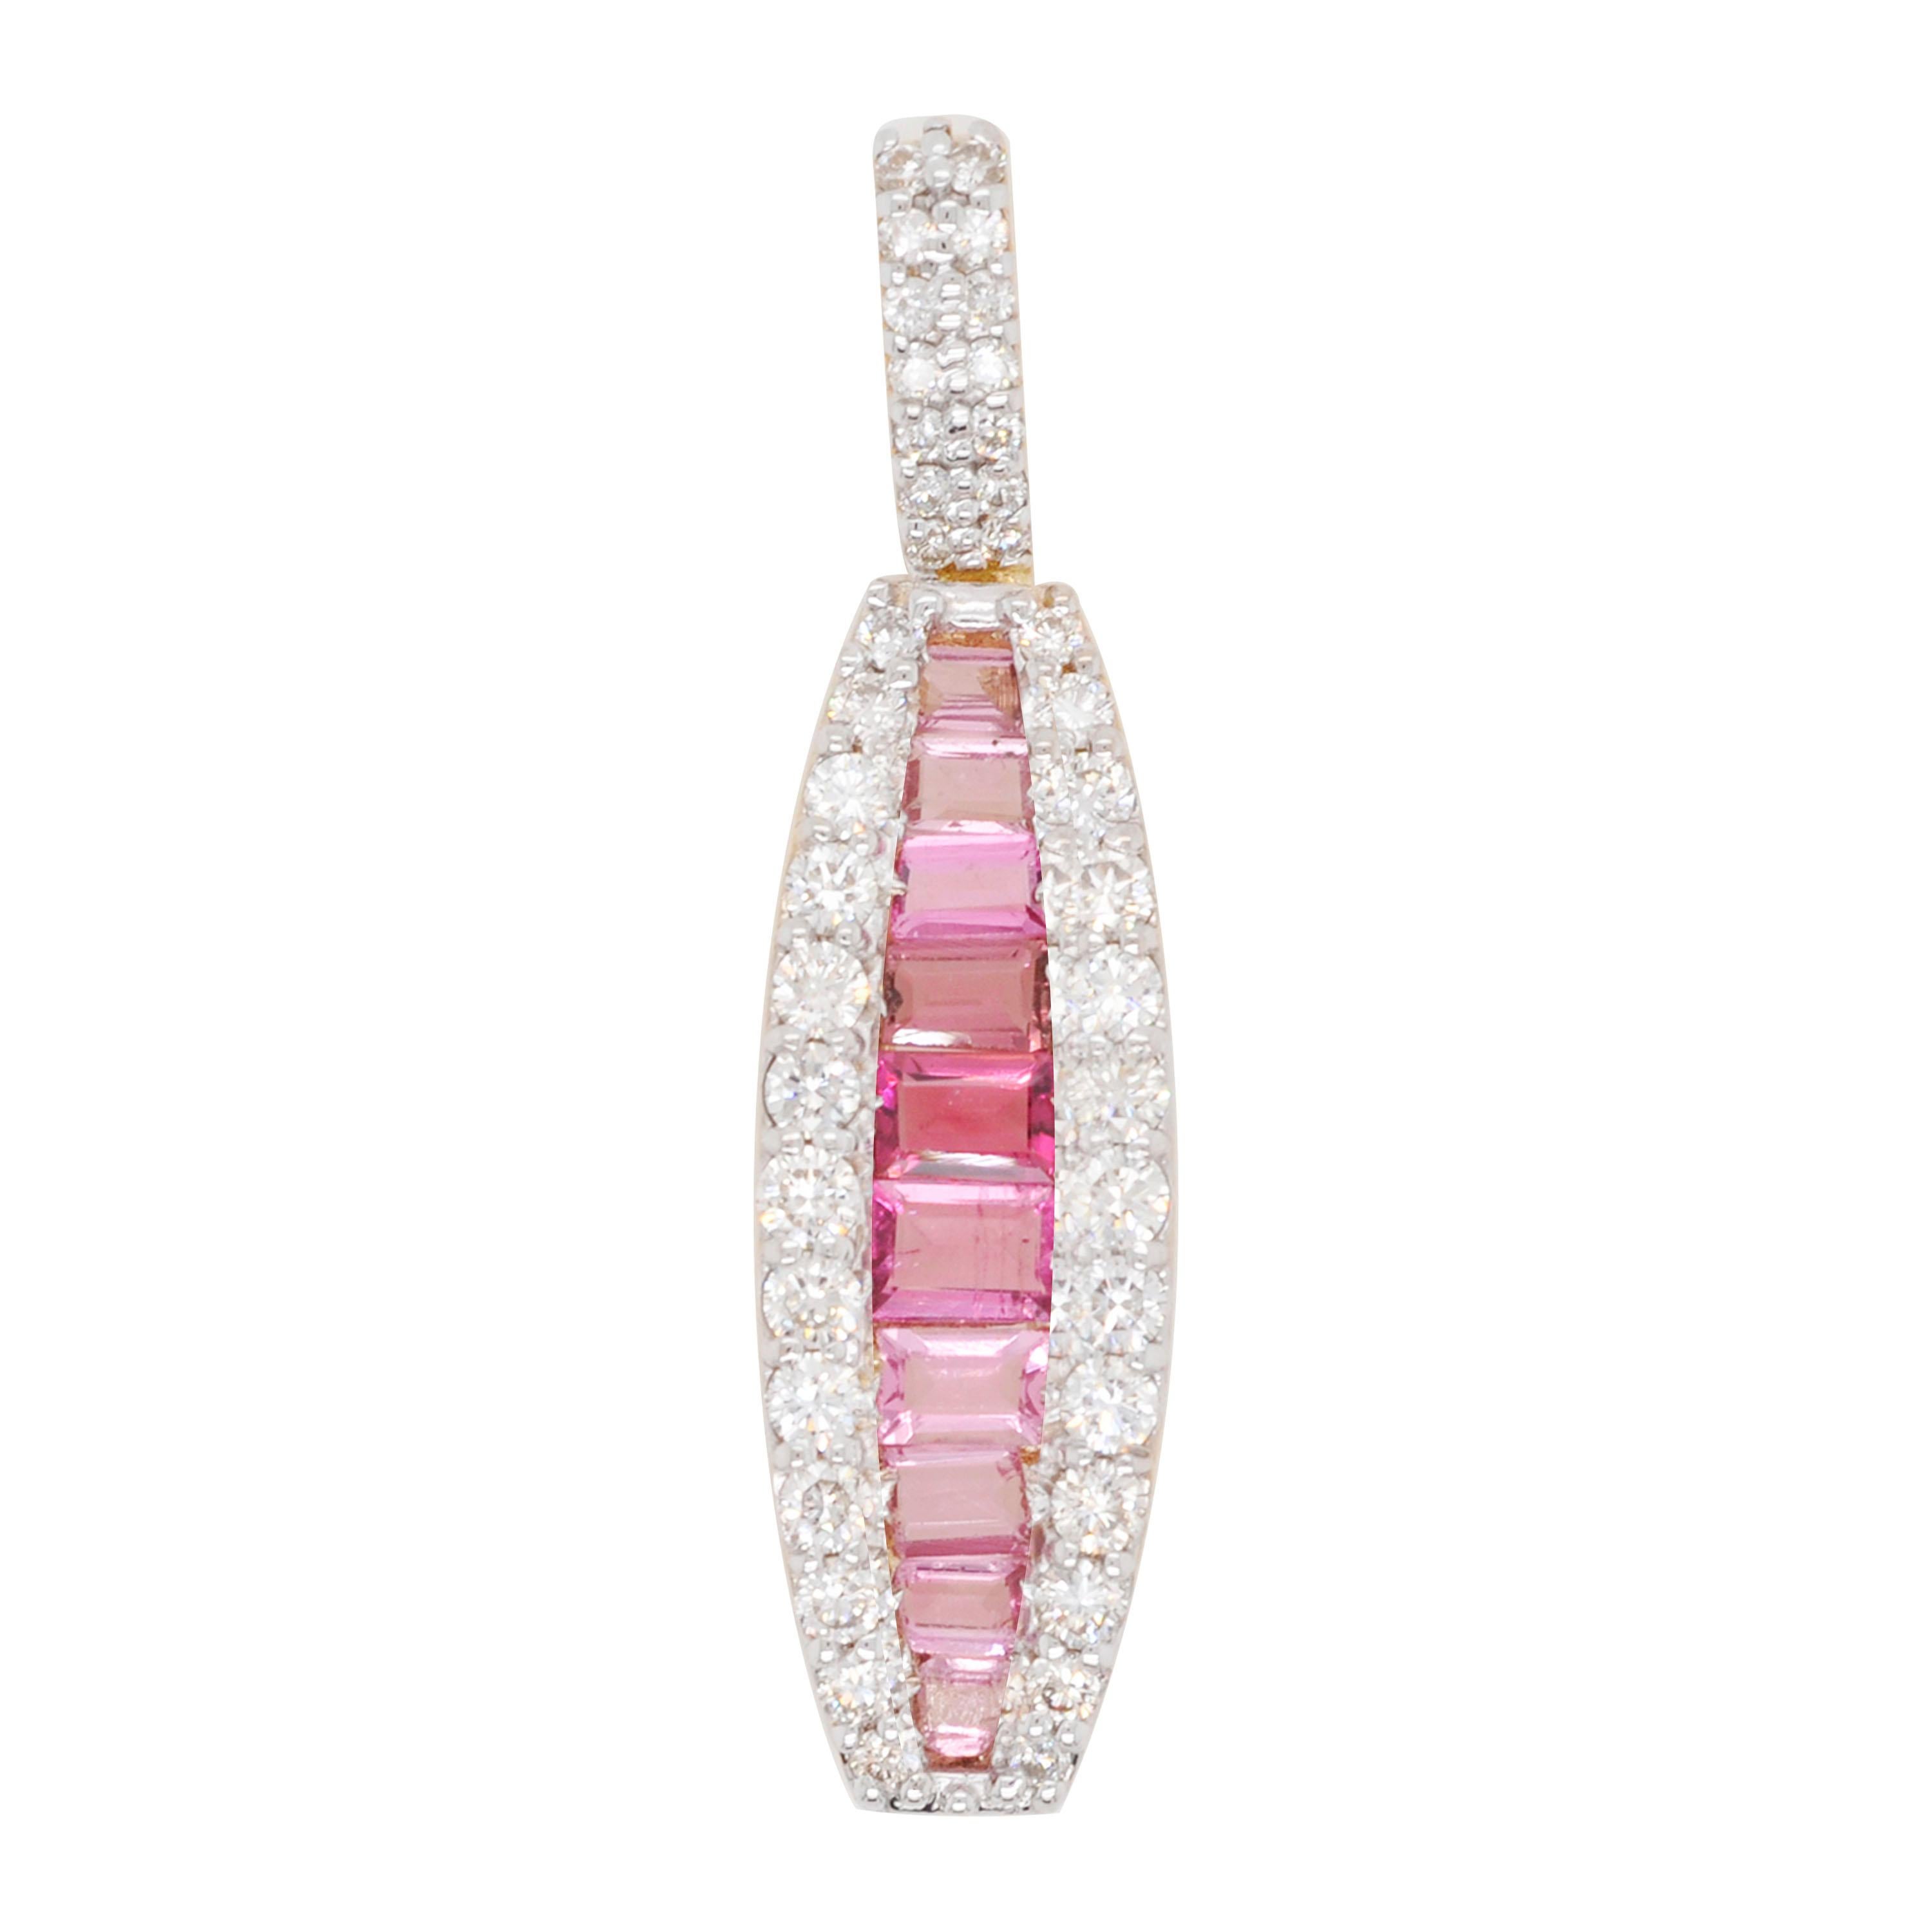 18 Karat Gold Channel Set Pink Tourmaline Baguette Diamond Pendant Necklace For Sale